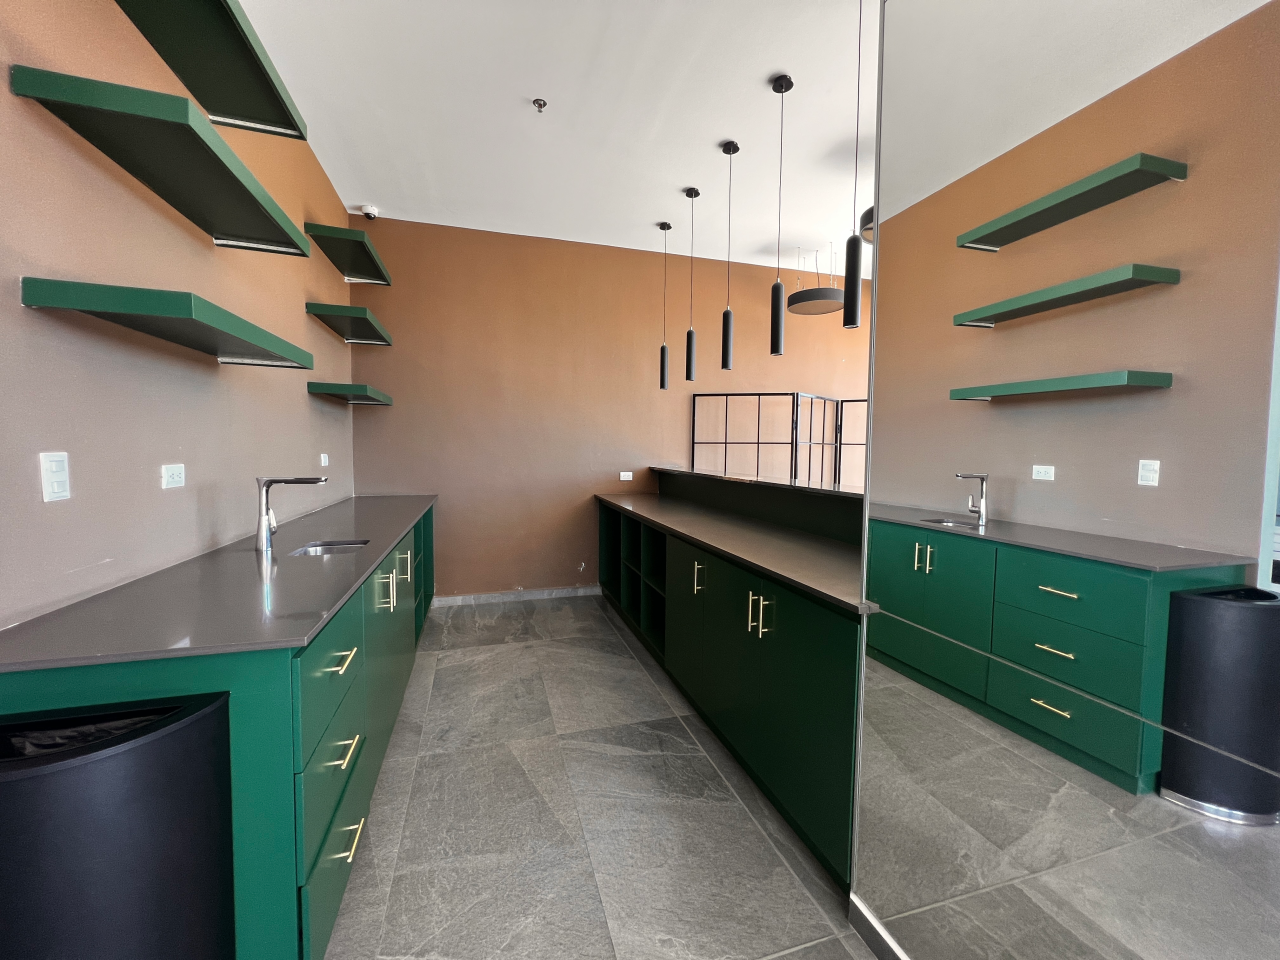 Área social de torre Agalta con muebles de cocina color verde y plancha de granito color negro, paredes color café claro, repisas y lámparas colgantes.